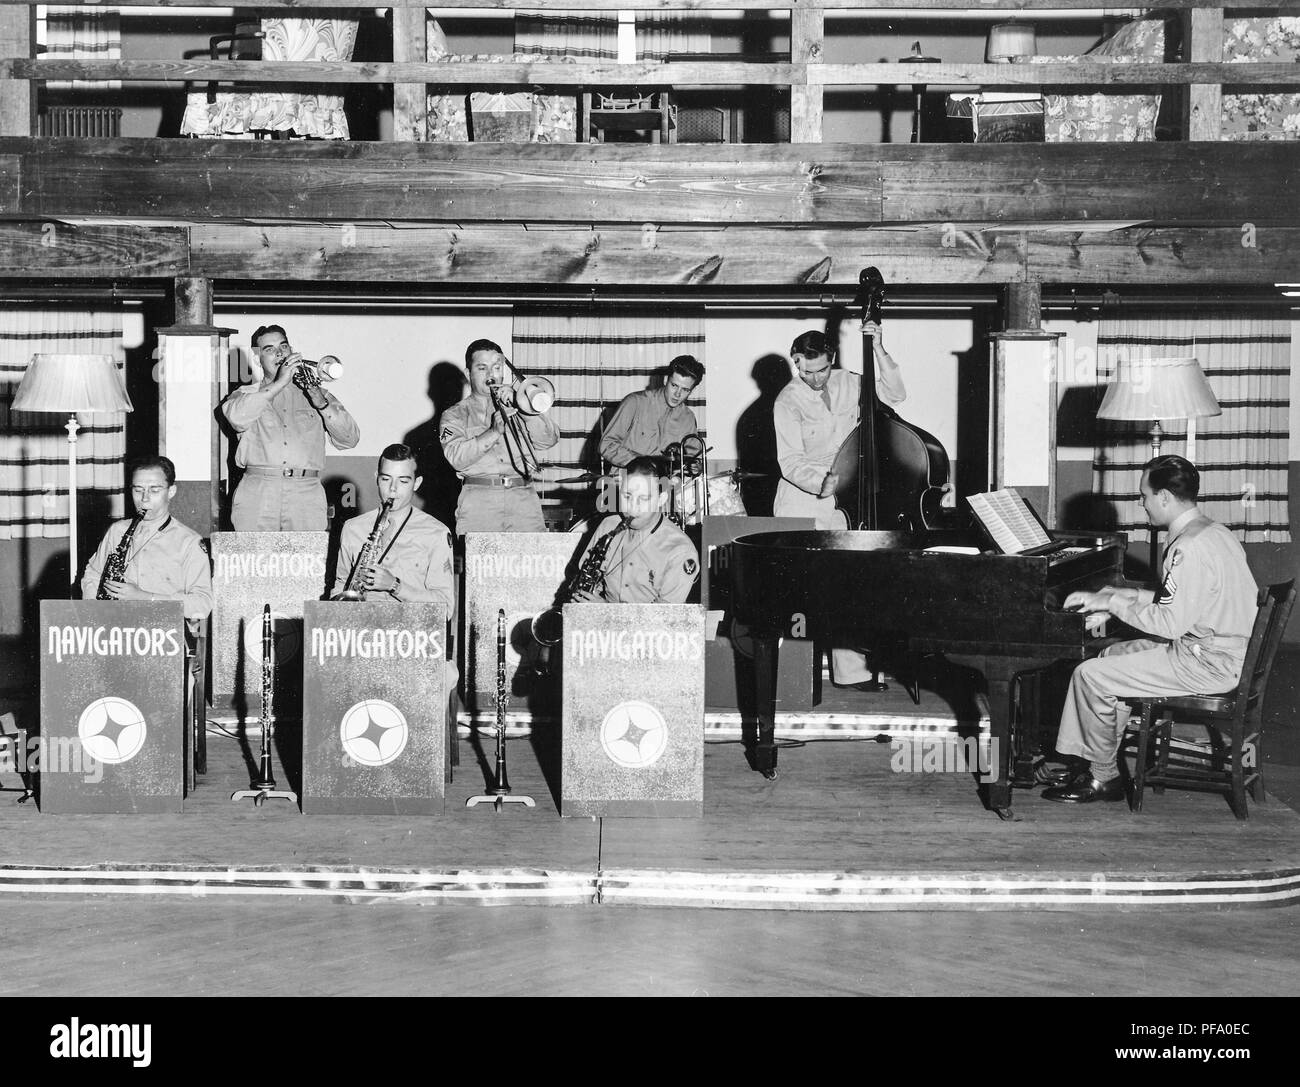 Schwarz-weiß Foto mit acht männlichen Mitglieder der Band' Navigatoren', tragen militärische Kleidung, Sitzen und Stehen auf einem niedrigen Podest, mit einer hölzernen Galerie Overhead, und spielt eine Vielzahl von Instrumenten, einschließlich Hörner, Saxophon, Bass und Piano, mit einem geflügelten Symbol auf mehrere Musiker "Ärmel, die auf eine Air Force Zugehörigkeit, wahrscheinlich in Ohio fotografiert sichtbar, in den 1940er Jahren, 1945. () Stockfoto